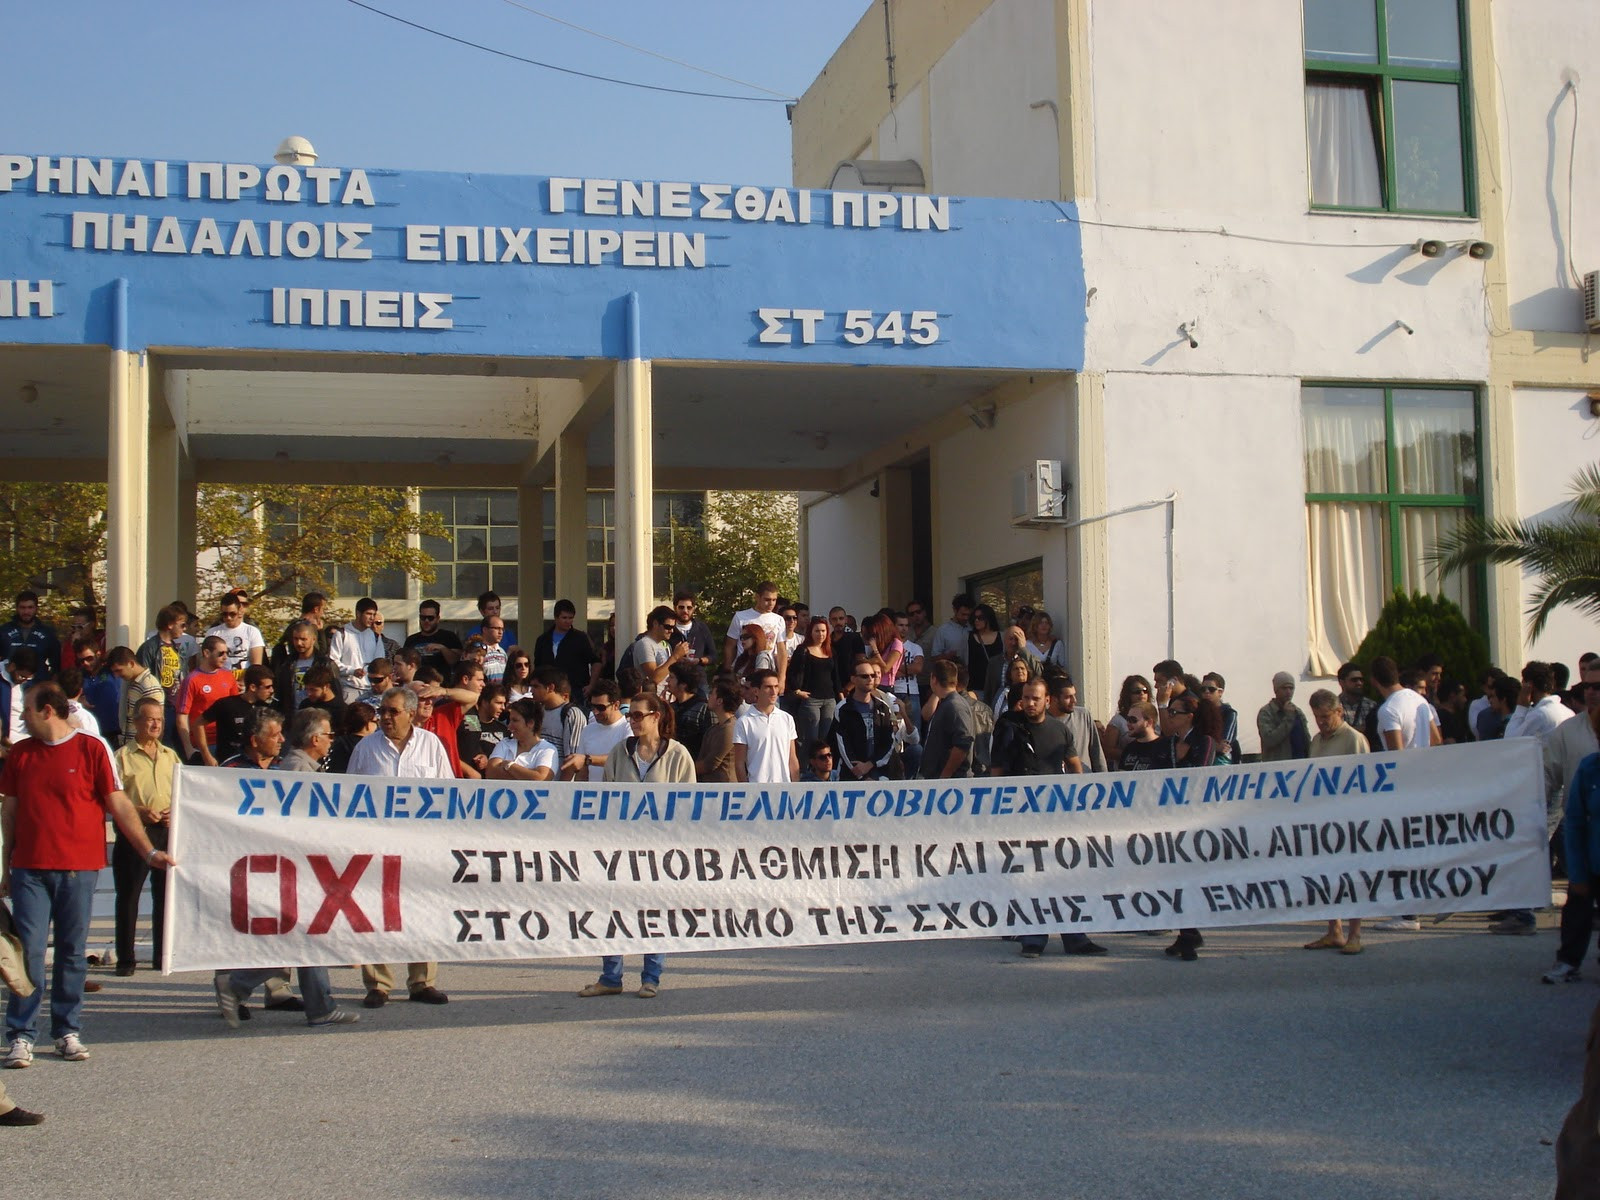 Θεσσαλονίκη: Κατάληψη της Ακαδημίας Εμπορικού Ναυτικού από τους σπουδαστές